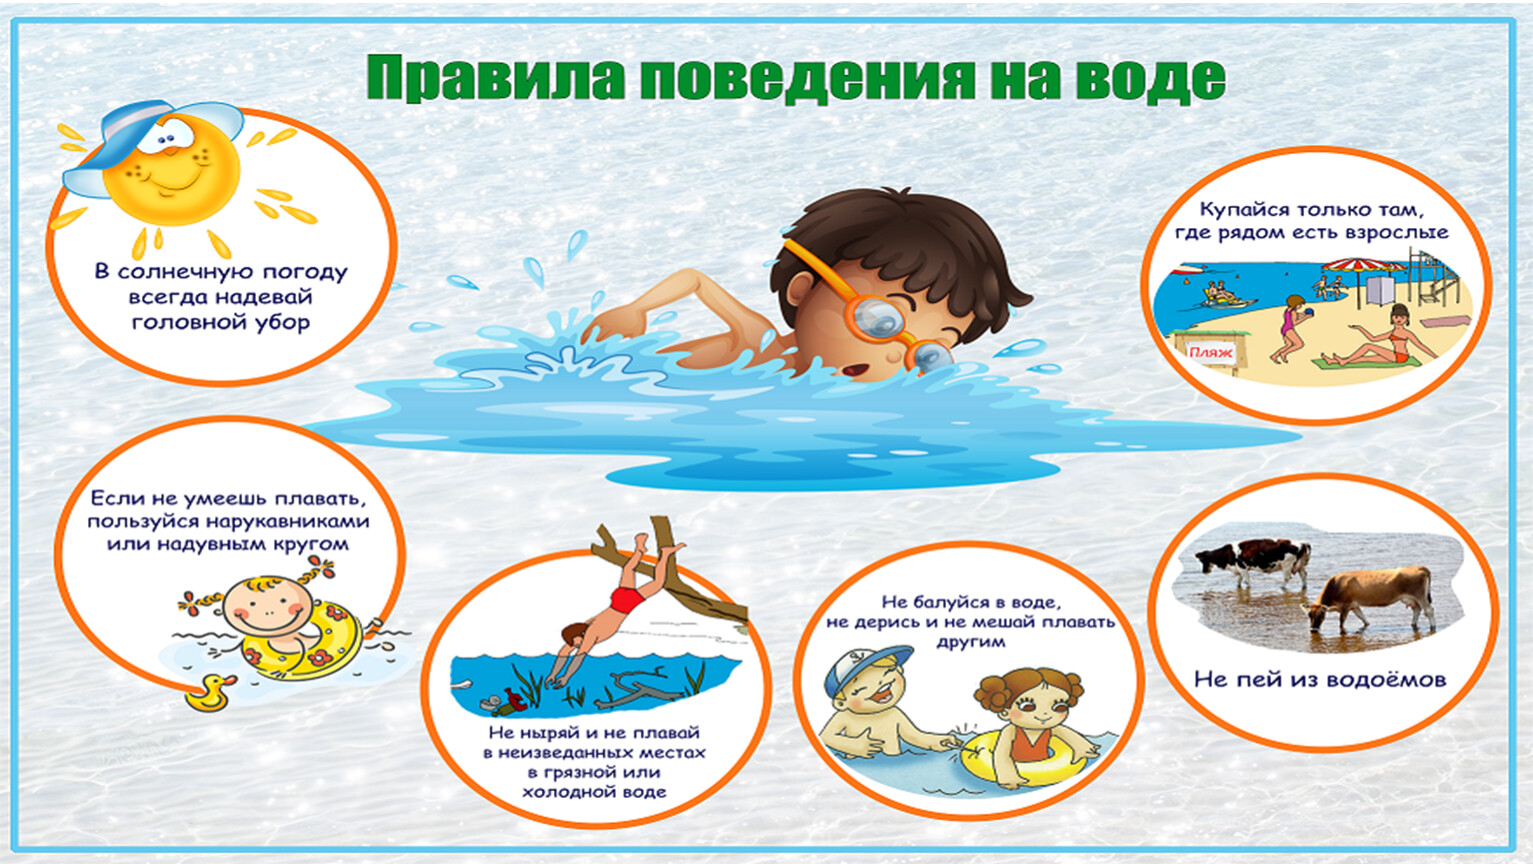 Актуально для родителей: в геоинформационной системе Ростовской области отмечены потенциально опасные для детей места